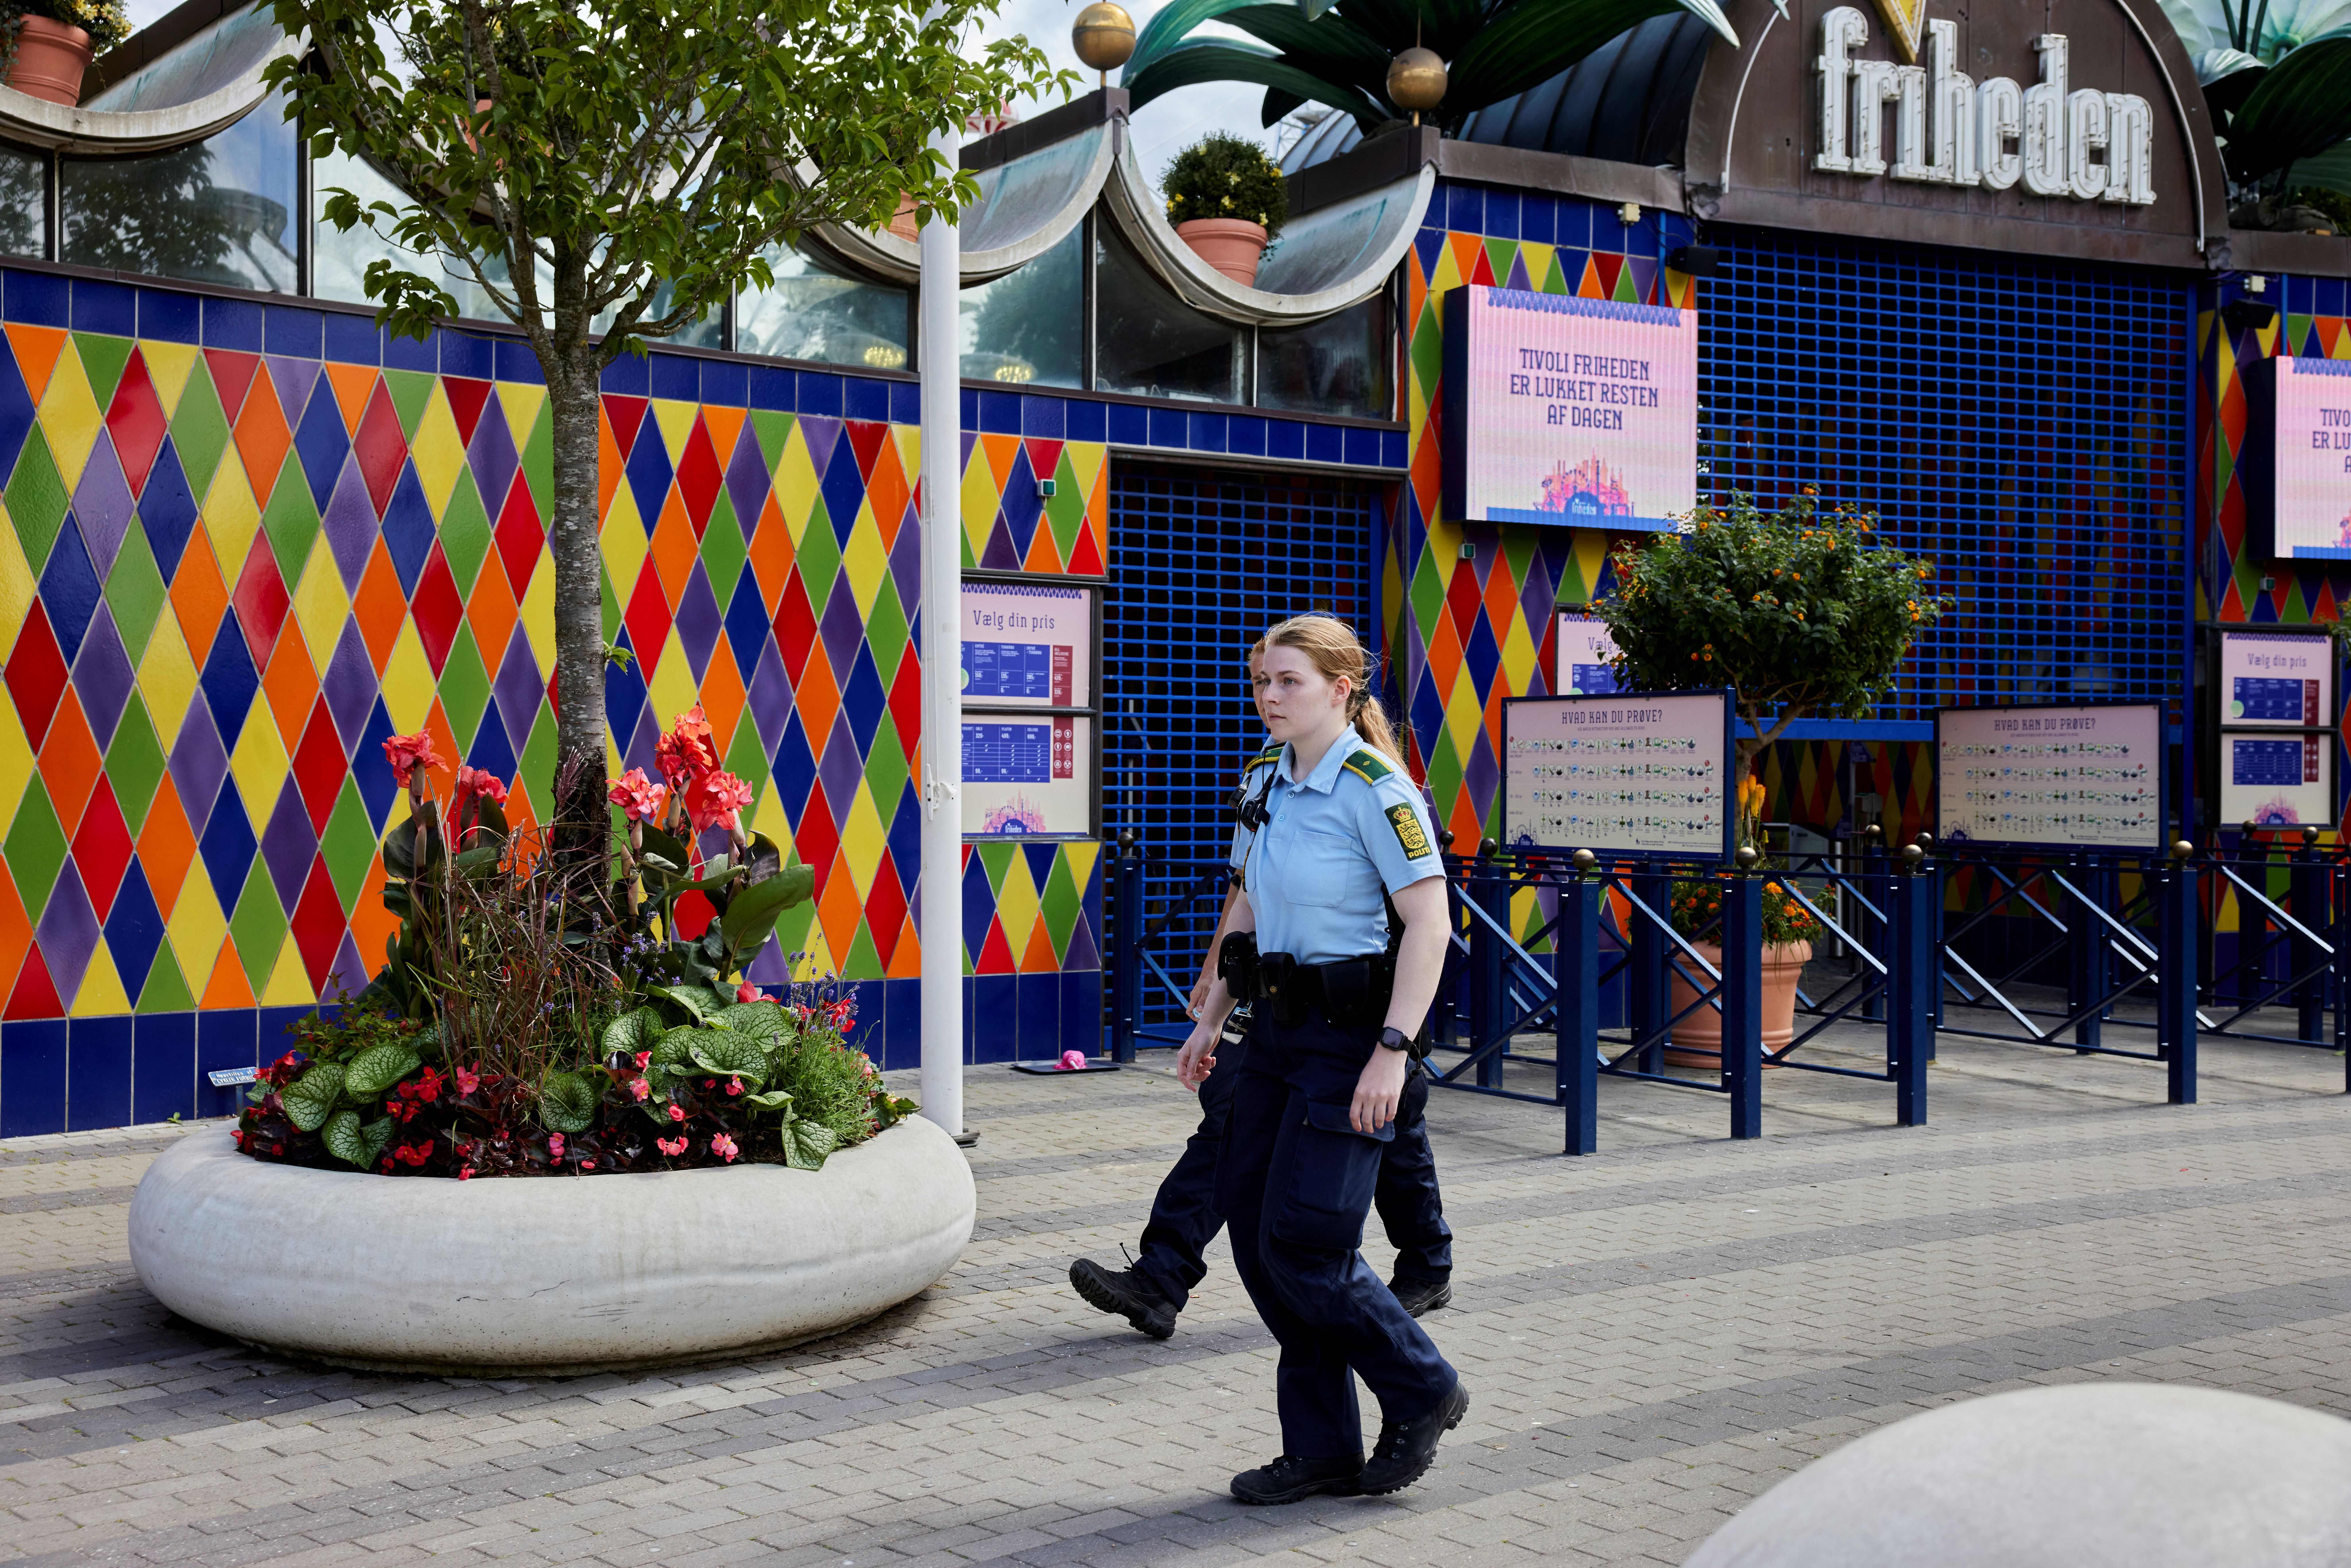 Police walk outside the closed Tivoli Friheden amusement park, in Aarhus, western Denmark on 14 July 2022